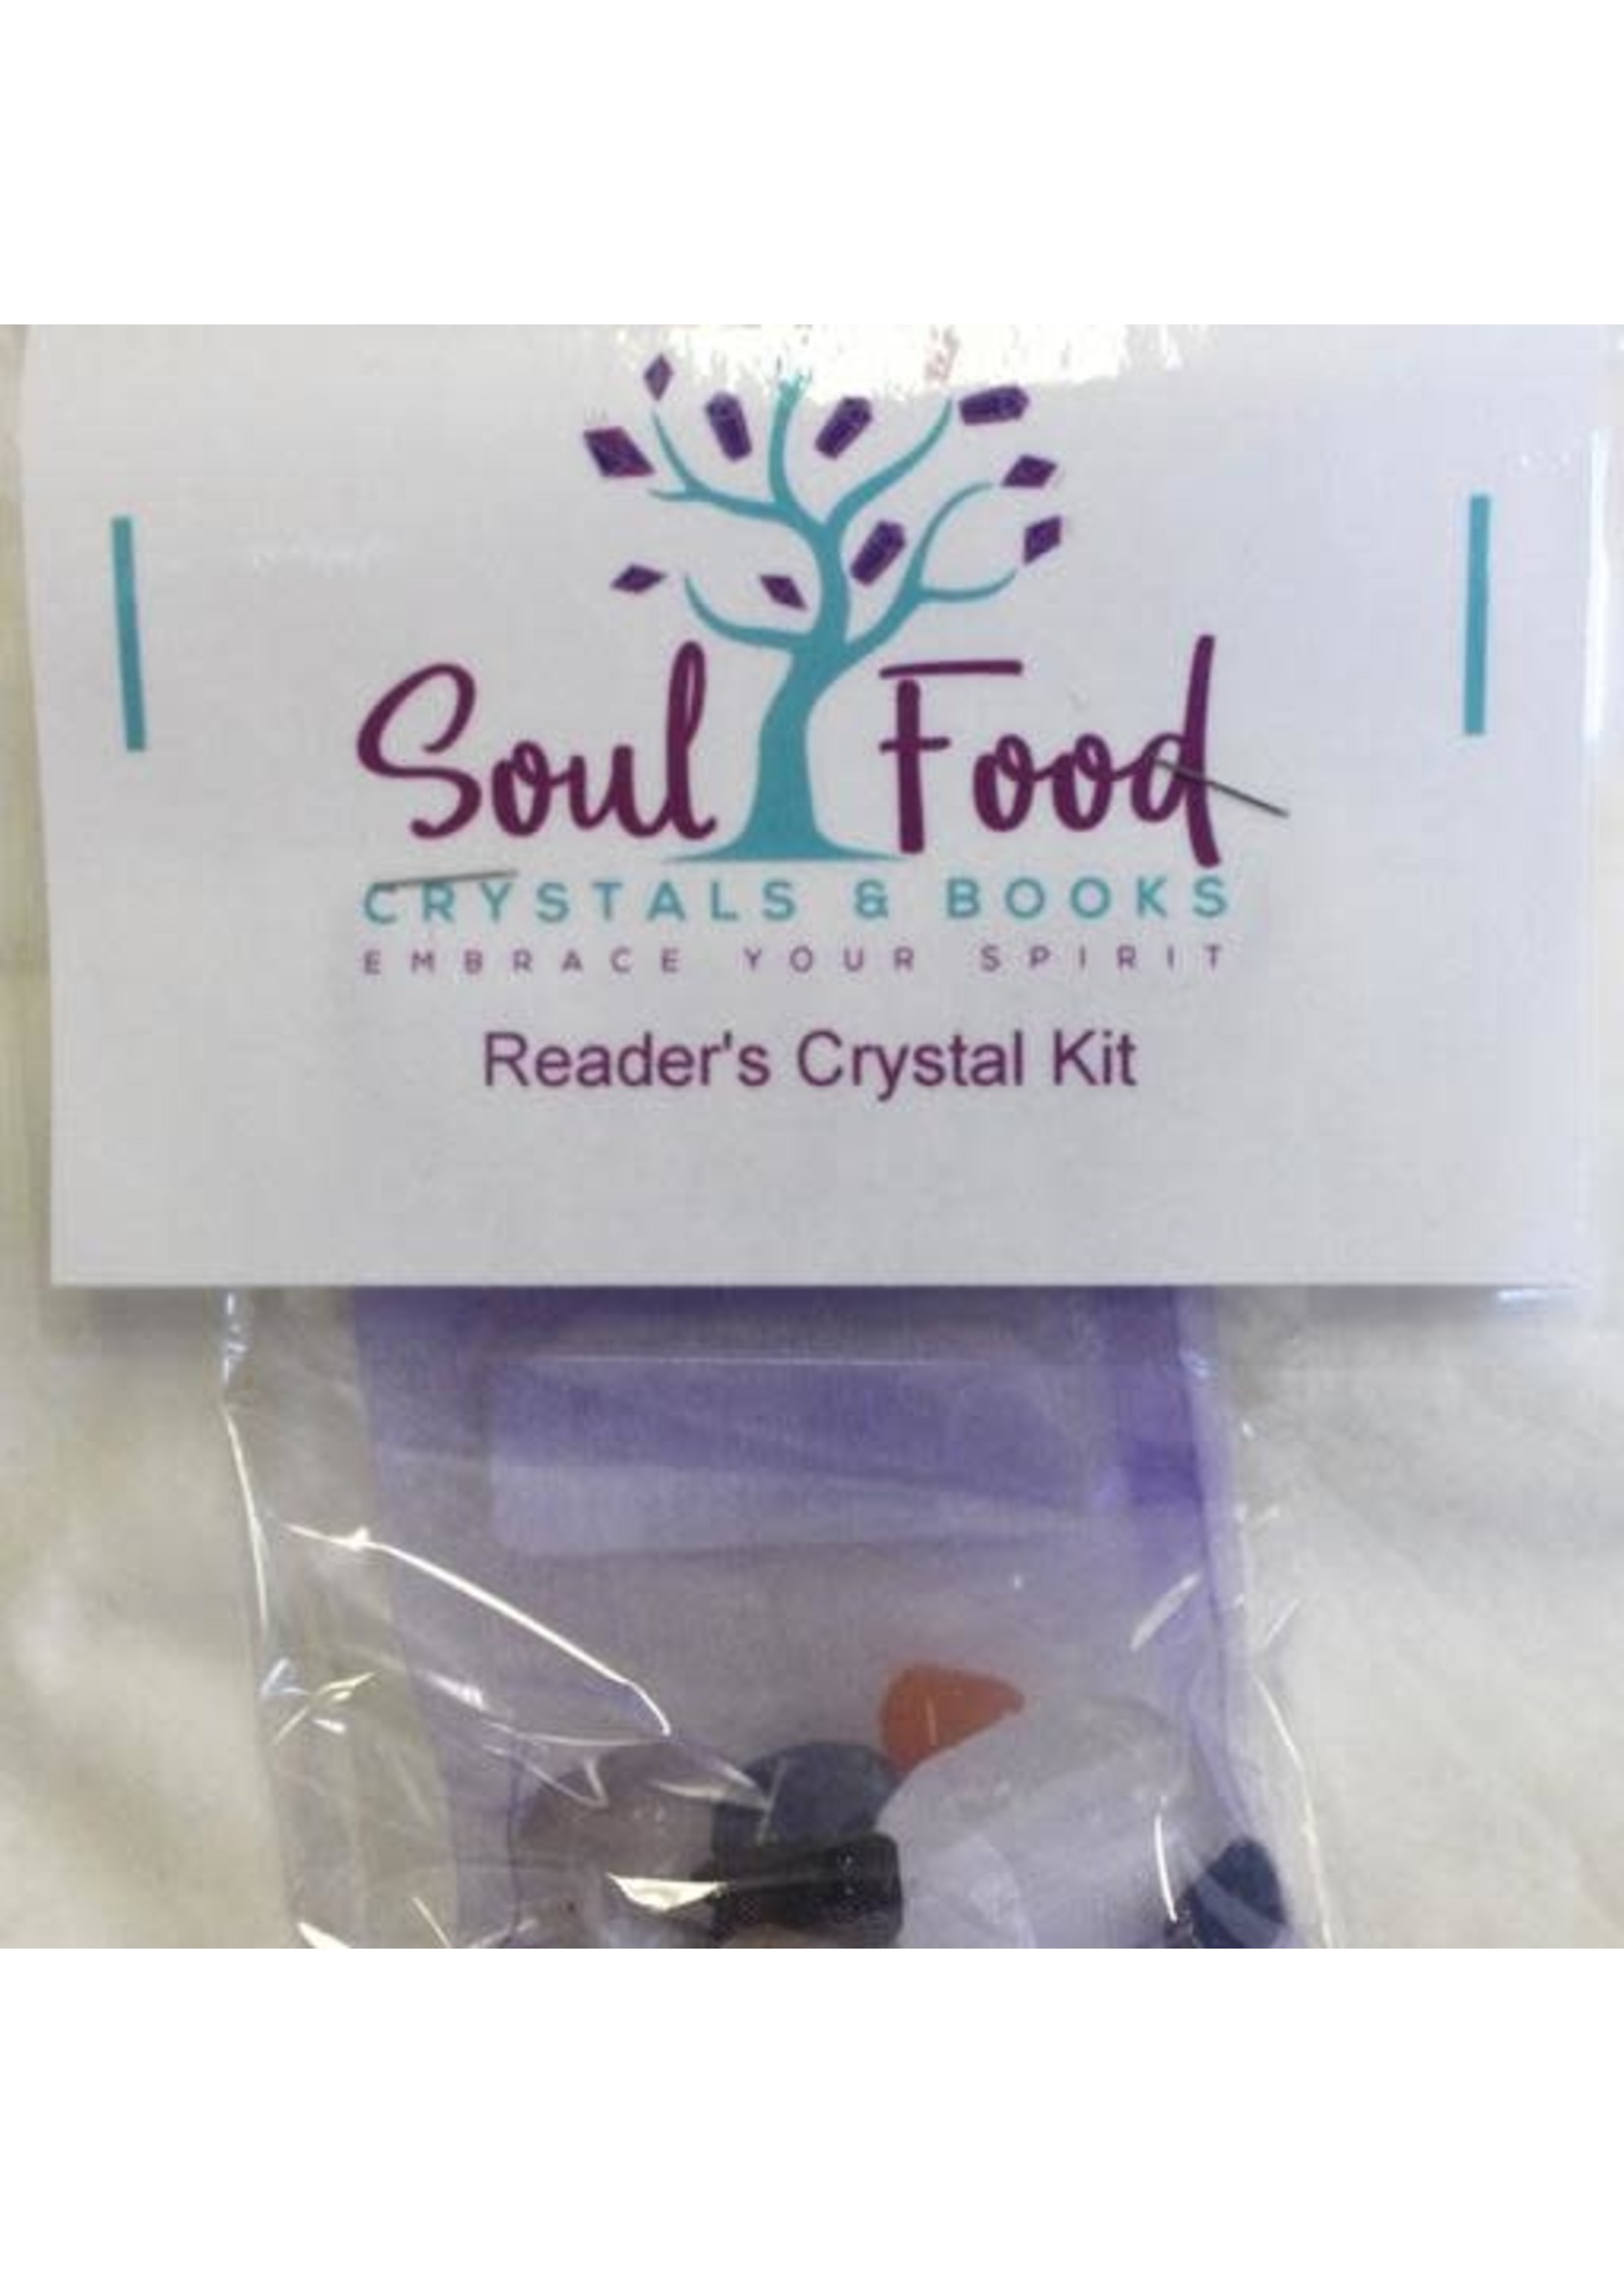 Reader's Crystal Kits